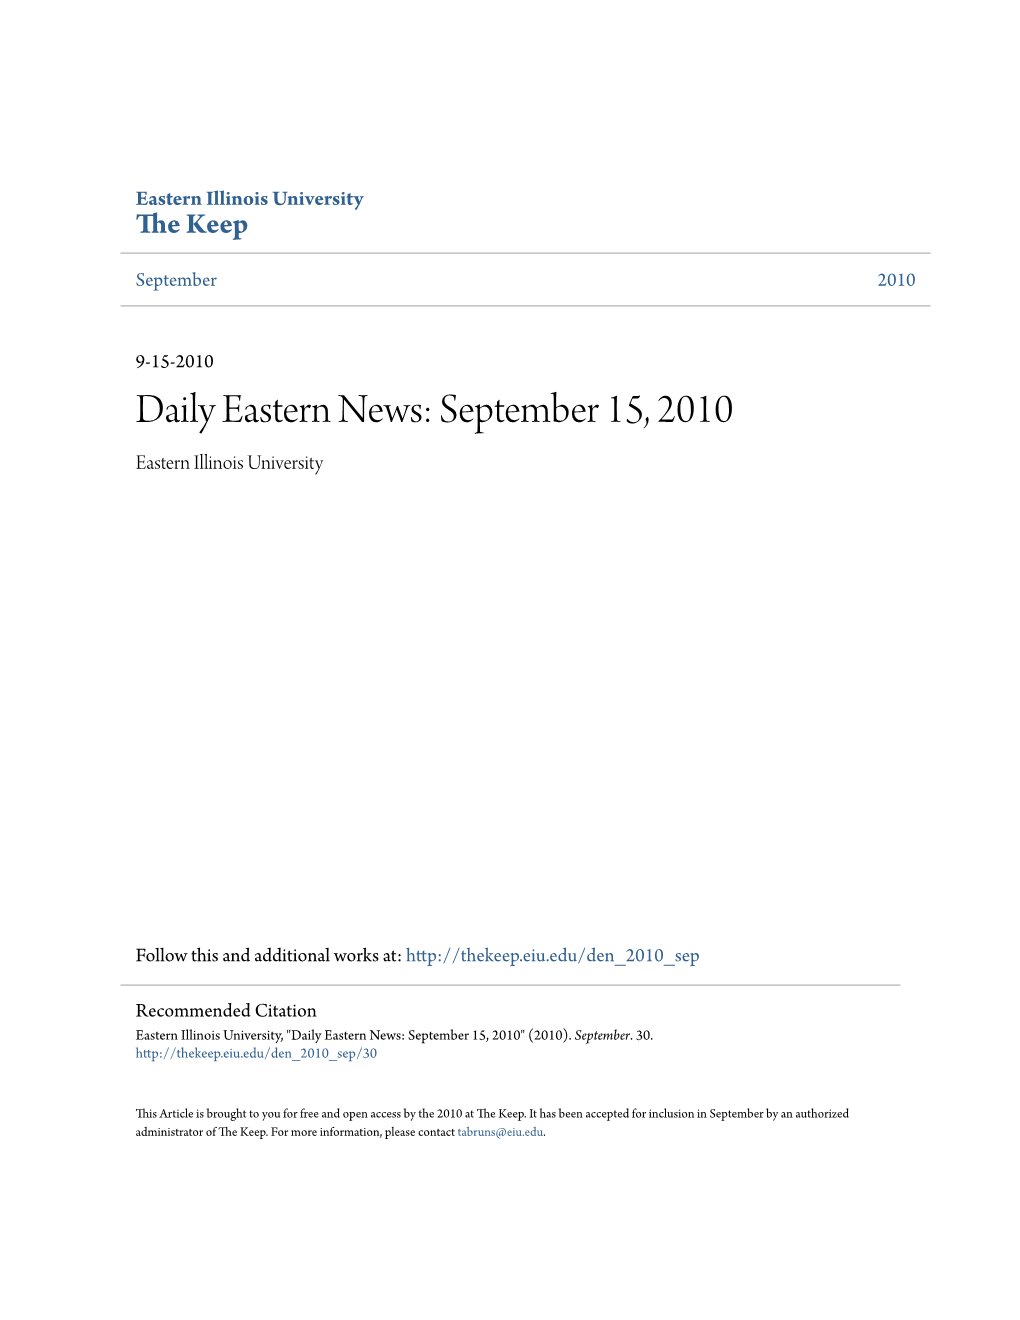 Daily Eastern News: September 15, 2010 Eastern Illinois University